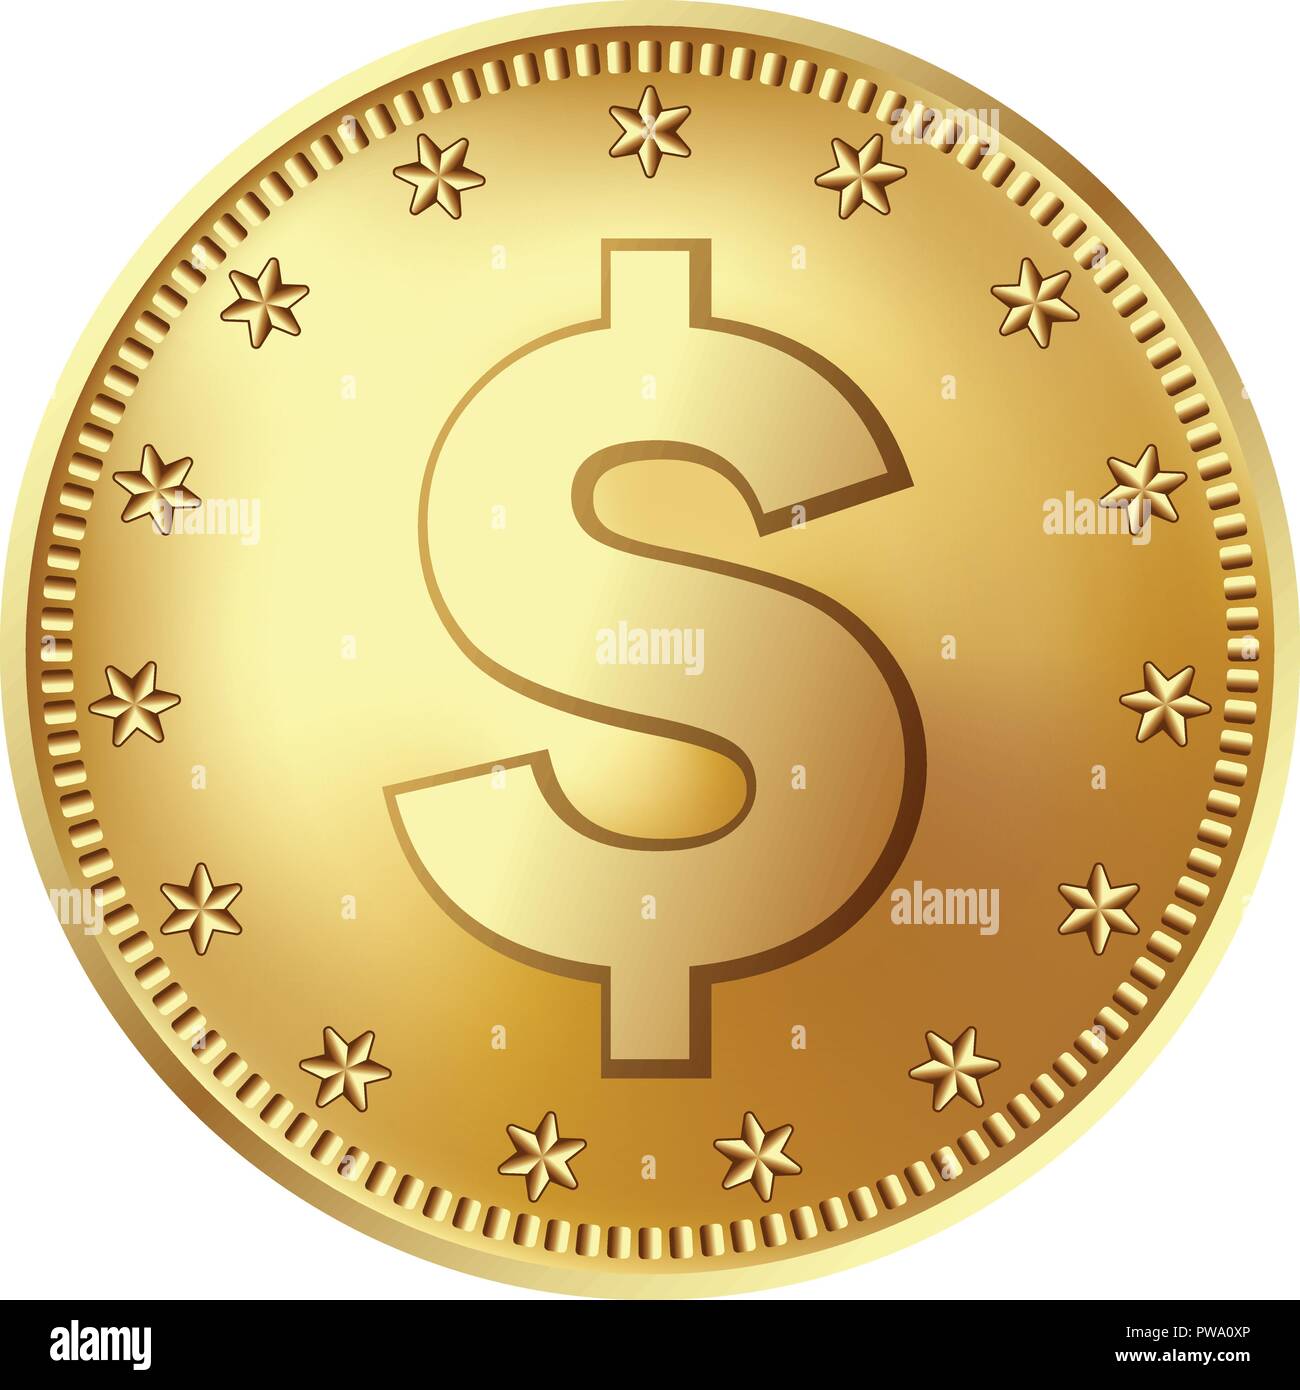 Golden dollar coin, money. Stock Vector